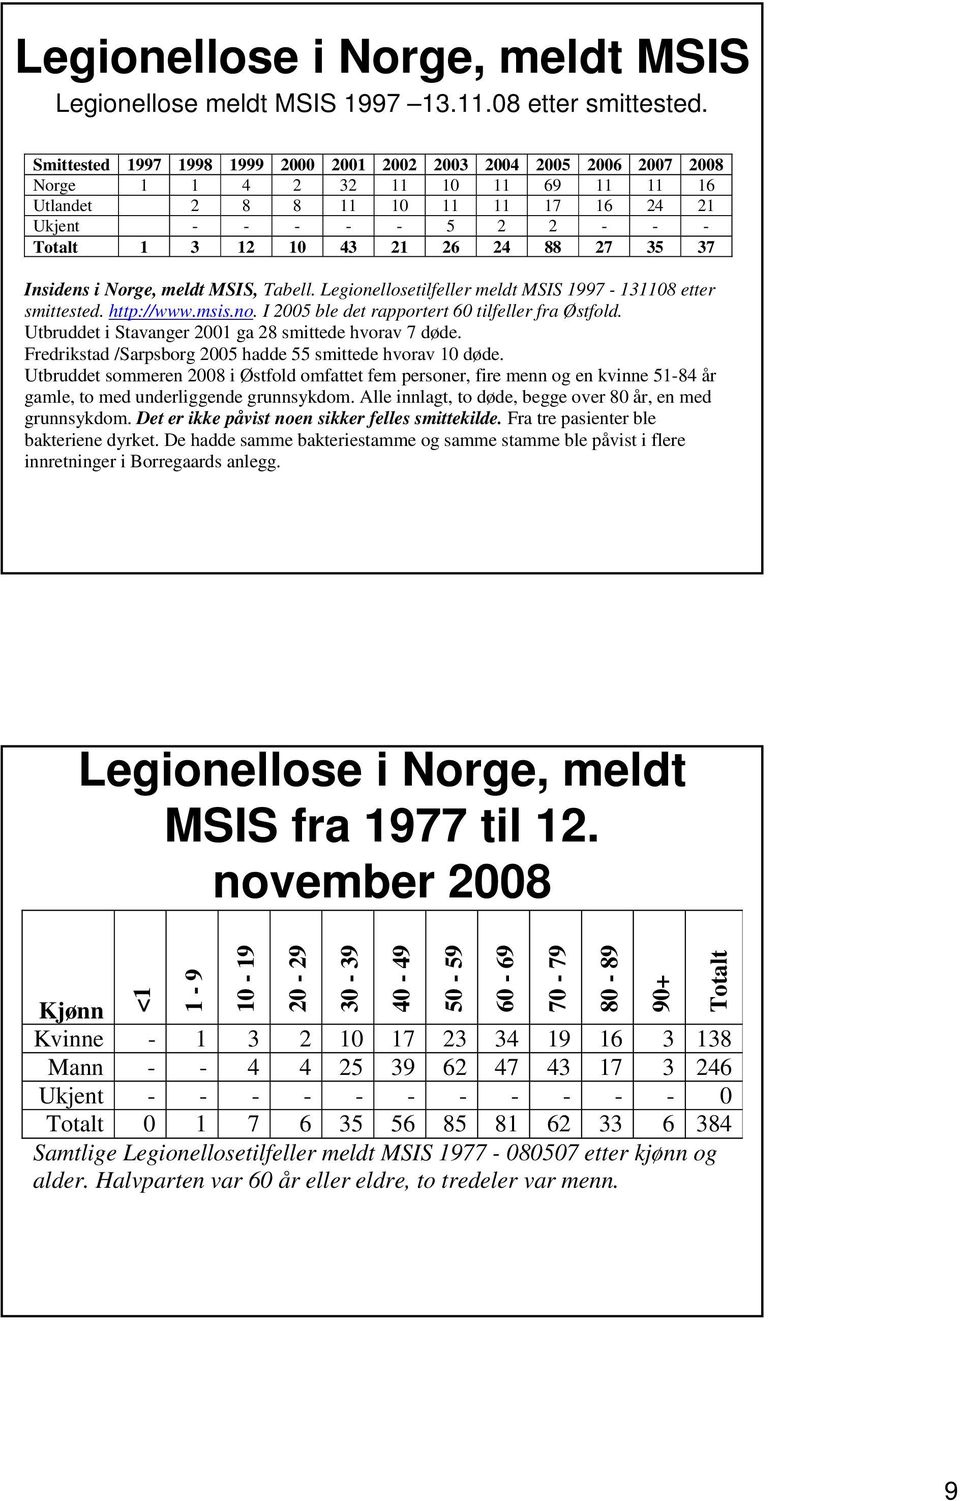 26 24 88 27 35 37 Insidens i Norge, meldt MSIS, Tabell. Legionellosetilfeller meldt MSIS 1997-131108 etter smittested. http://www.msis.no. I 2005 ble det rapportert 60 tilfeller fra Østfold.